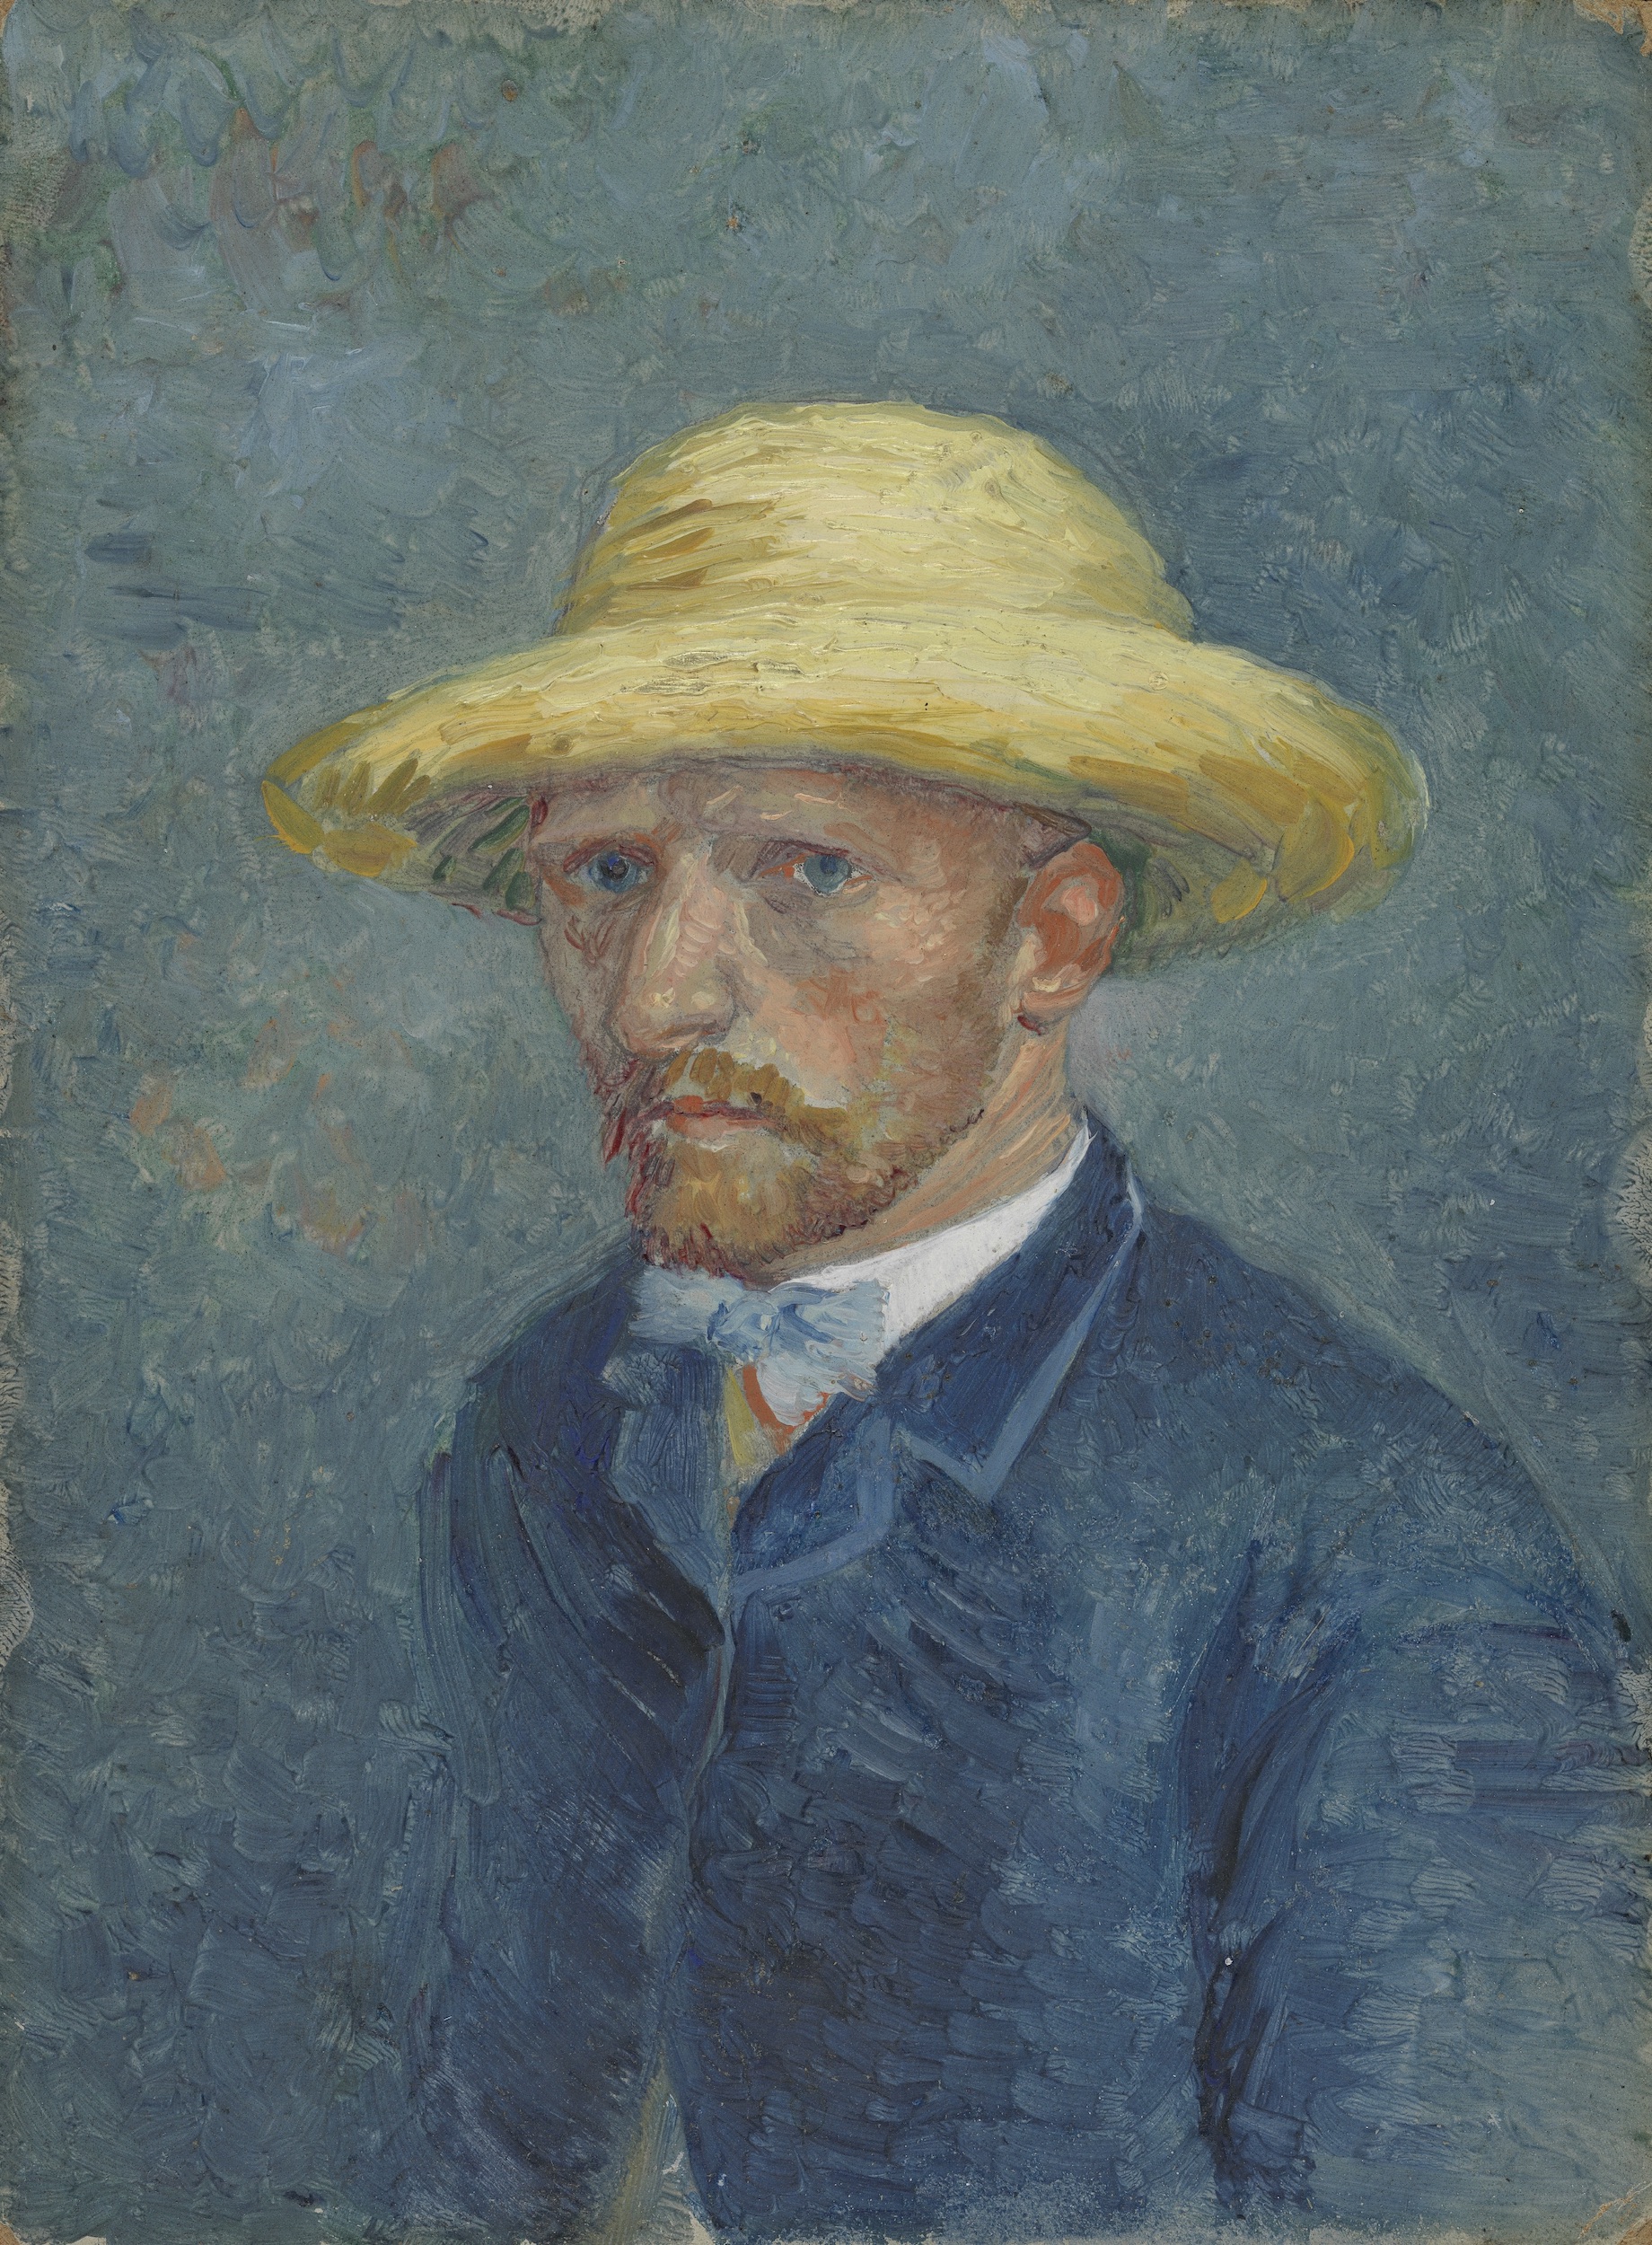 Selbstporträt oder Porträt von Theo van Gogh by Vincent van Gogh - Sommer 1887 - 19 cm x 14.1 cm Van Gogh Museum